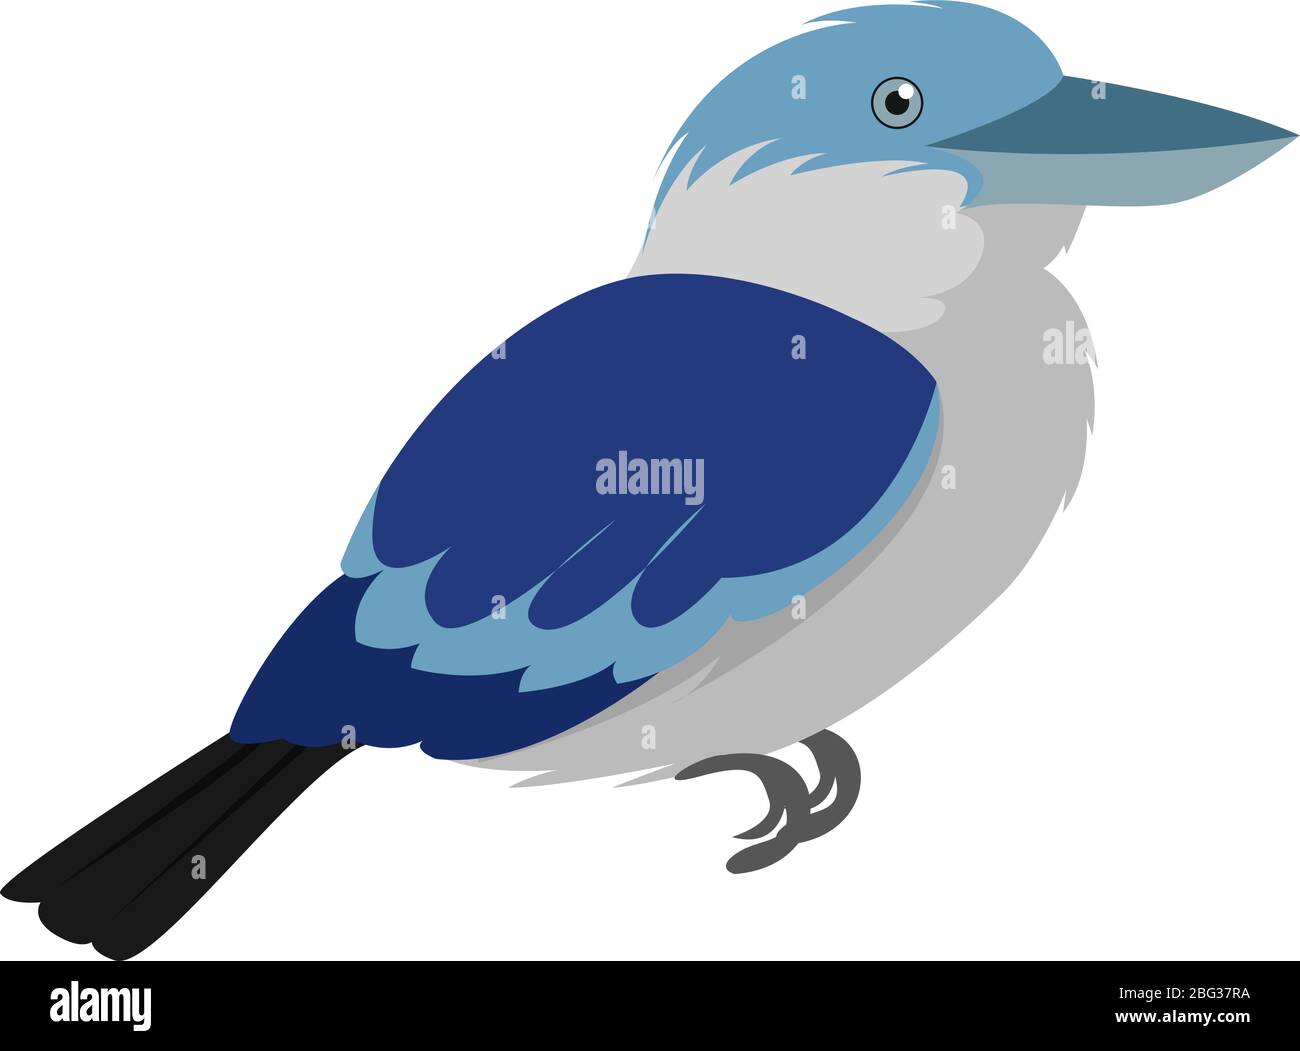 Kookaburra bird, illustration, vector on white background Stock Vector